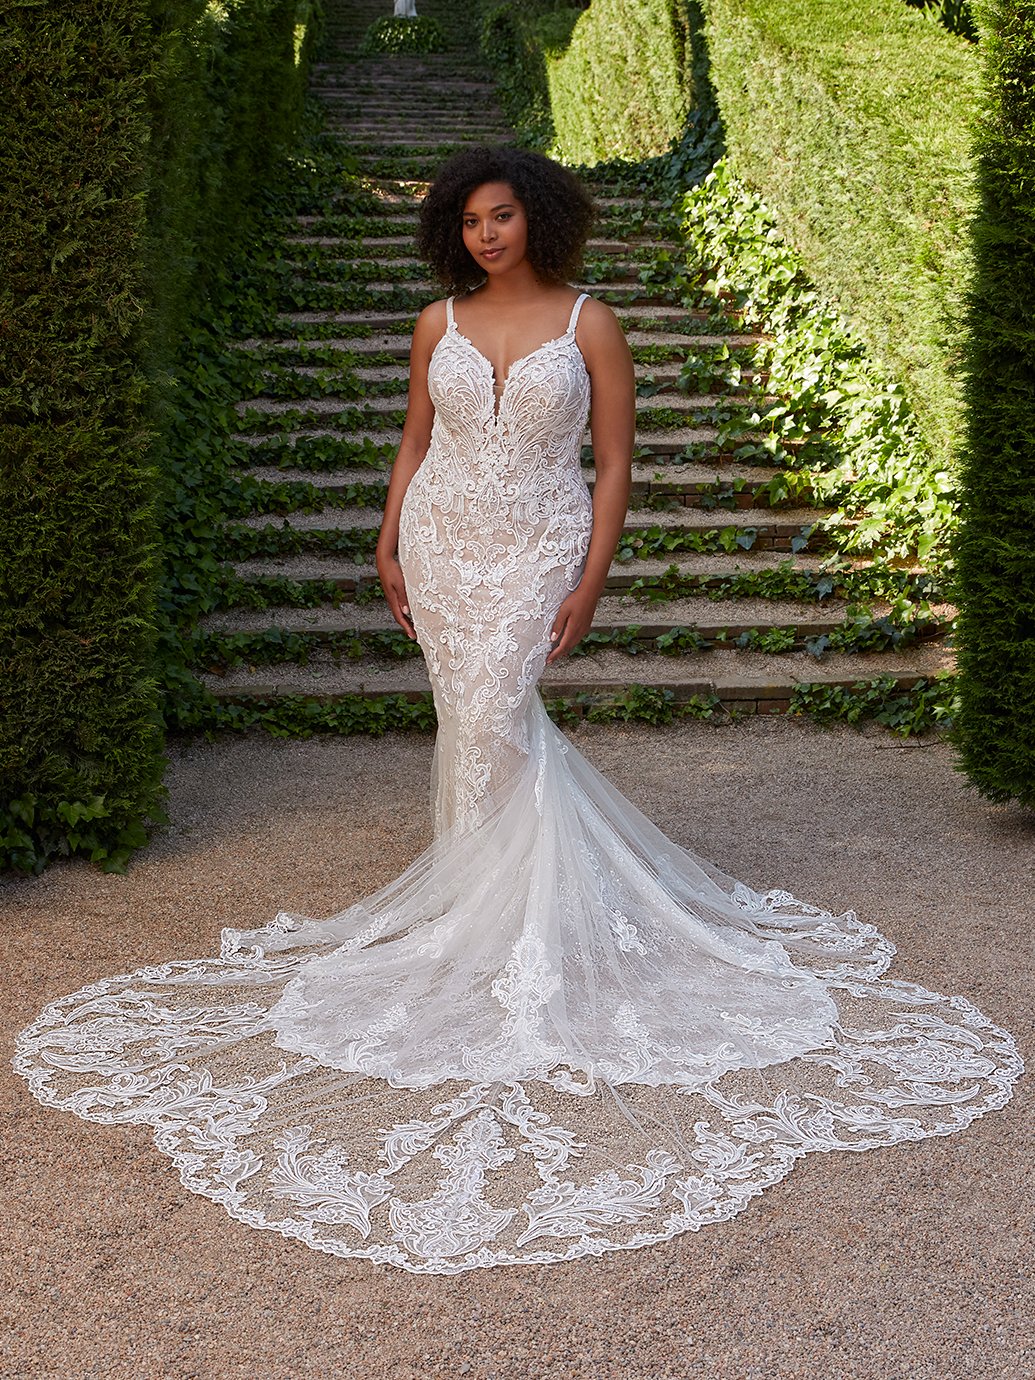 blanc-de-blanc-bridal-boutique-cleveland-dress-wedding-gown-elysee-edition-alessia (1).jpg